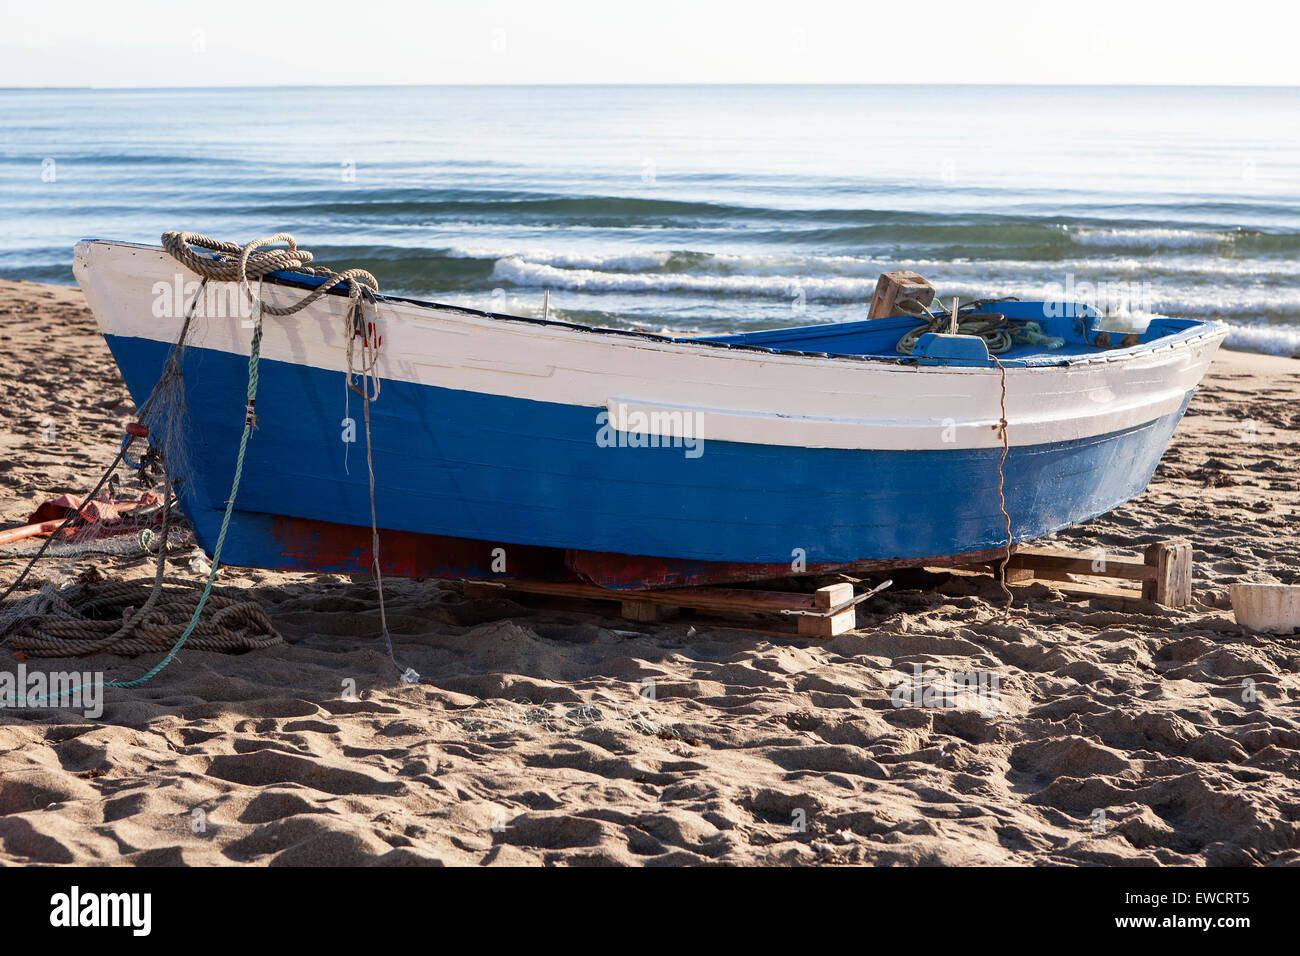 Barca da pesca, tipica della Spagna, nella sabbia sulla spiaggia Foto Stock